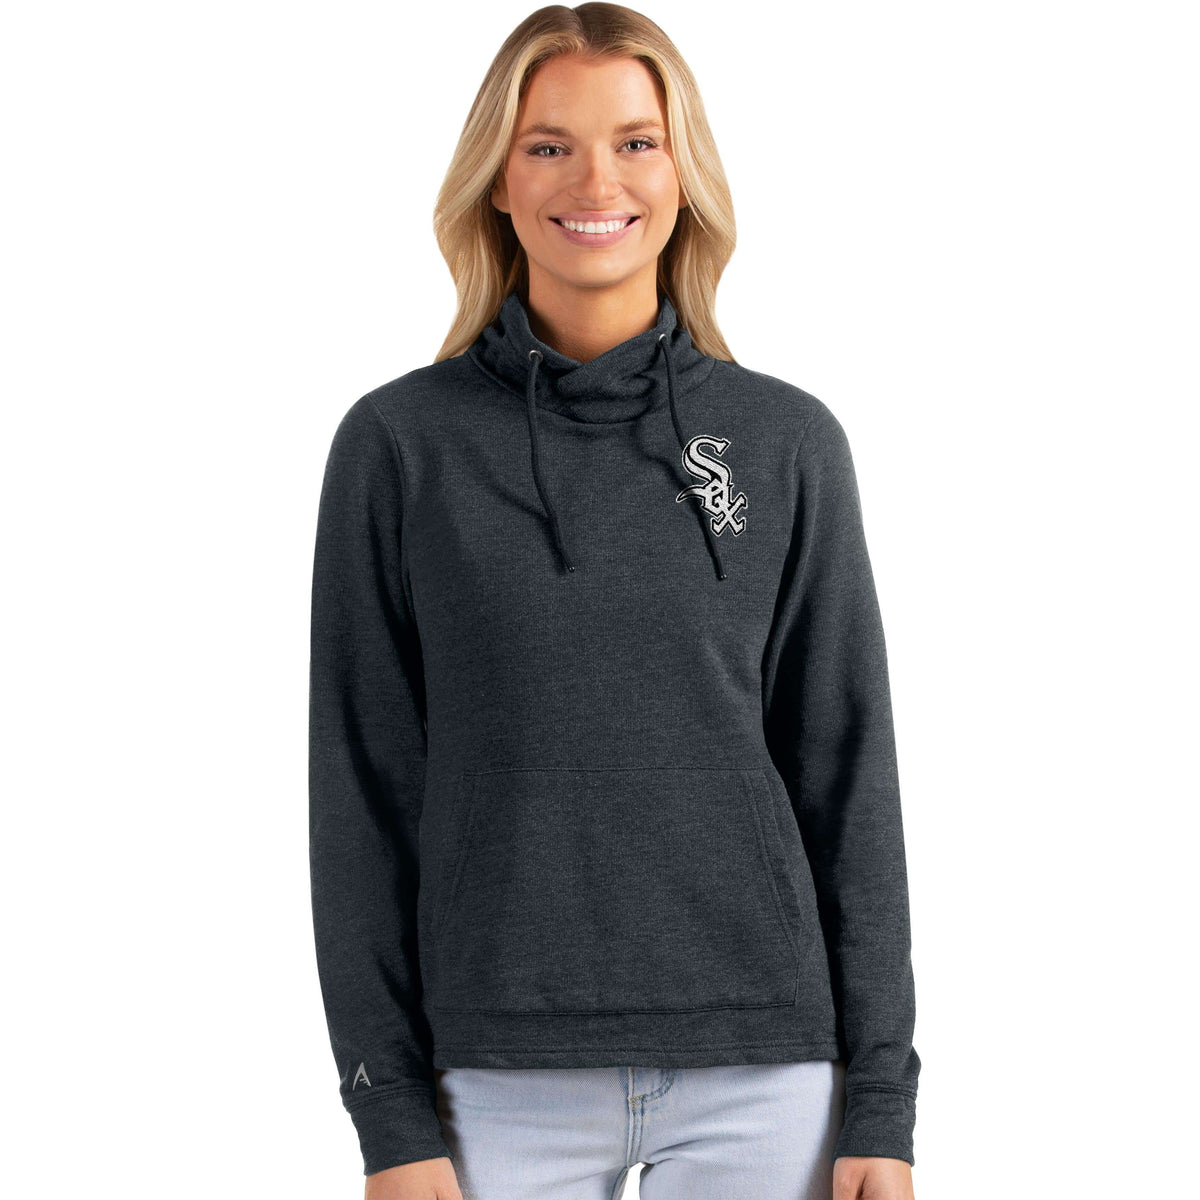 Chicago White Sox Antigua Women's Reward Pullover Sweatshirt - Heather